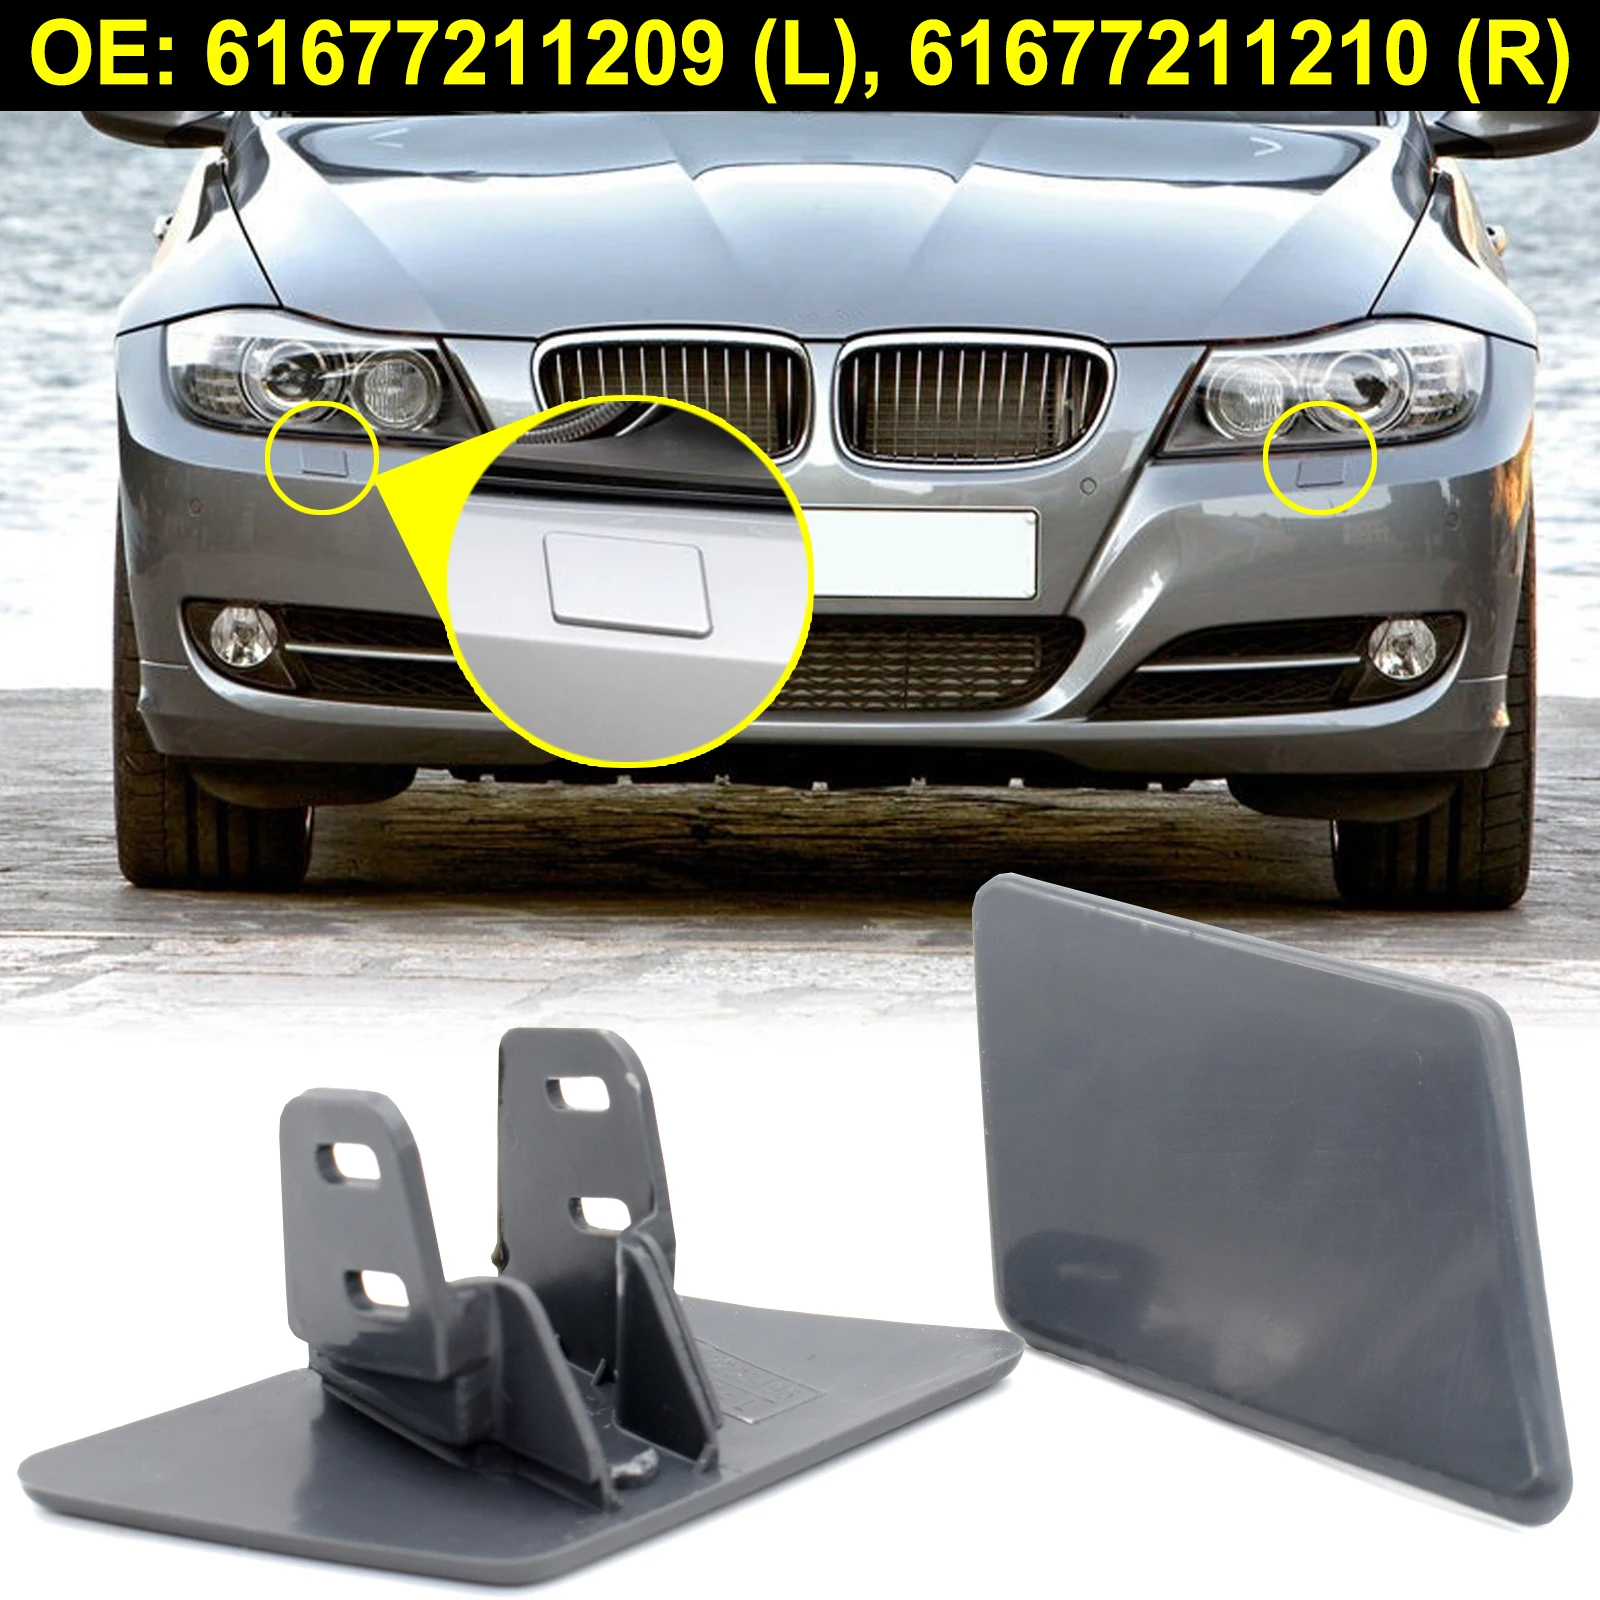 

For BMW E90 E91 328xi 320i 325i 335i 325xi Front Bumper Headlight Washer Nozzle Cover R&L Cap 61677211209 61677211210 Unpainted